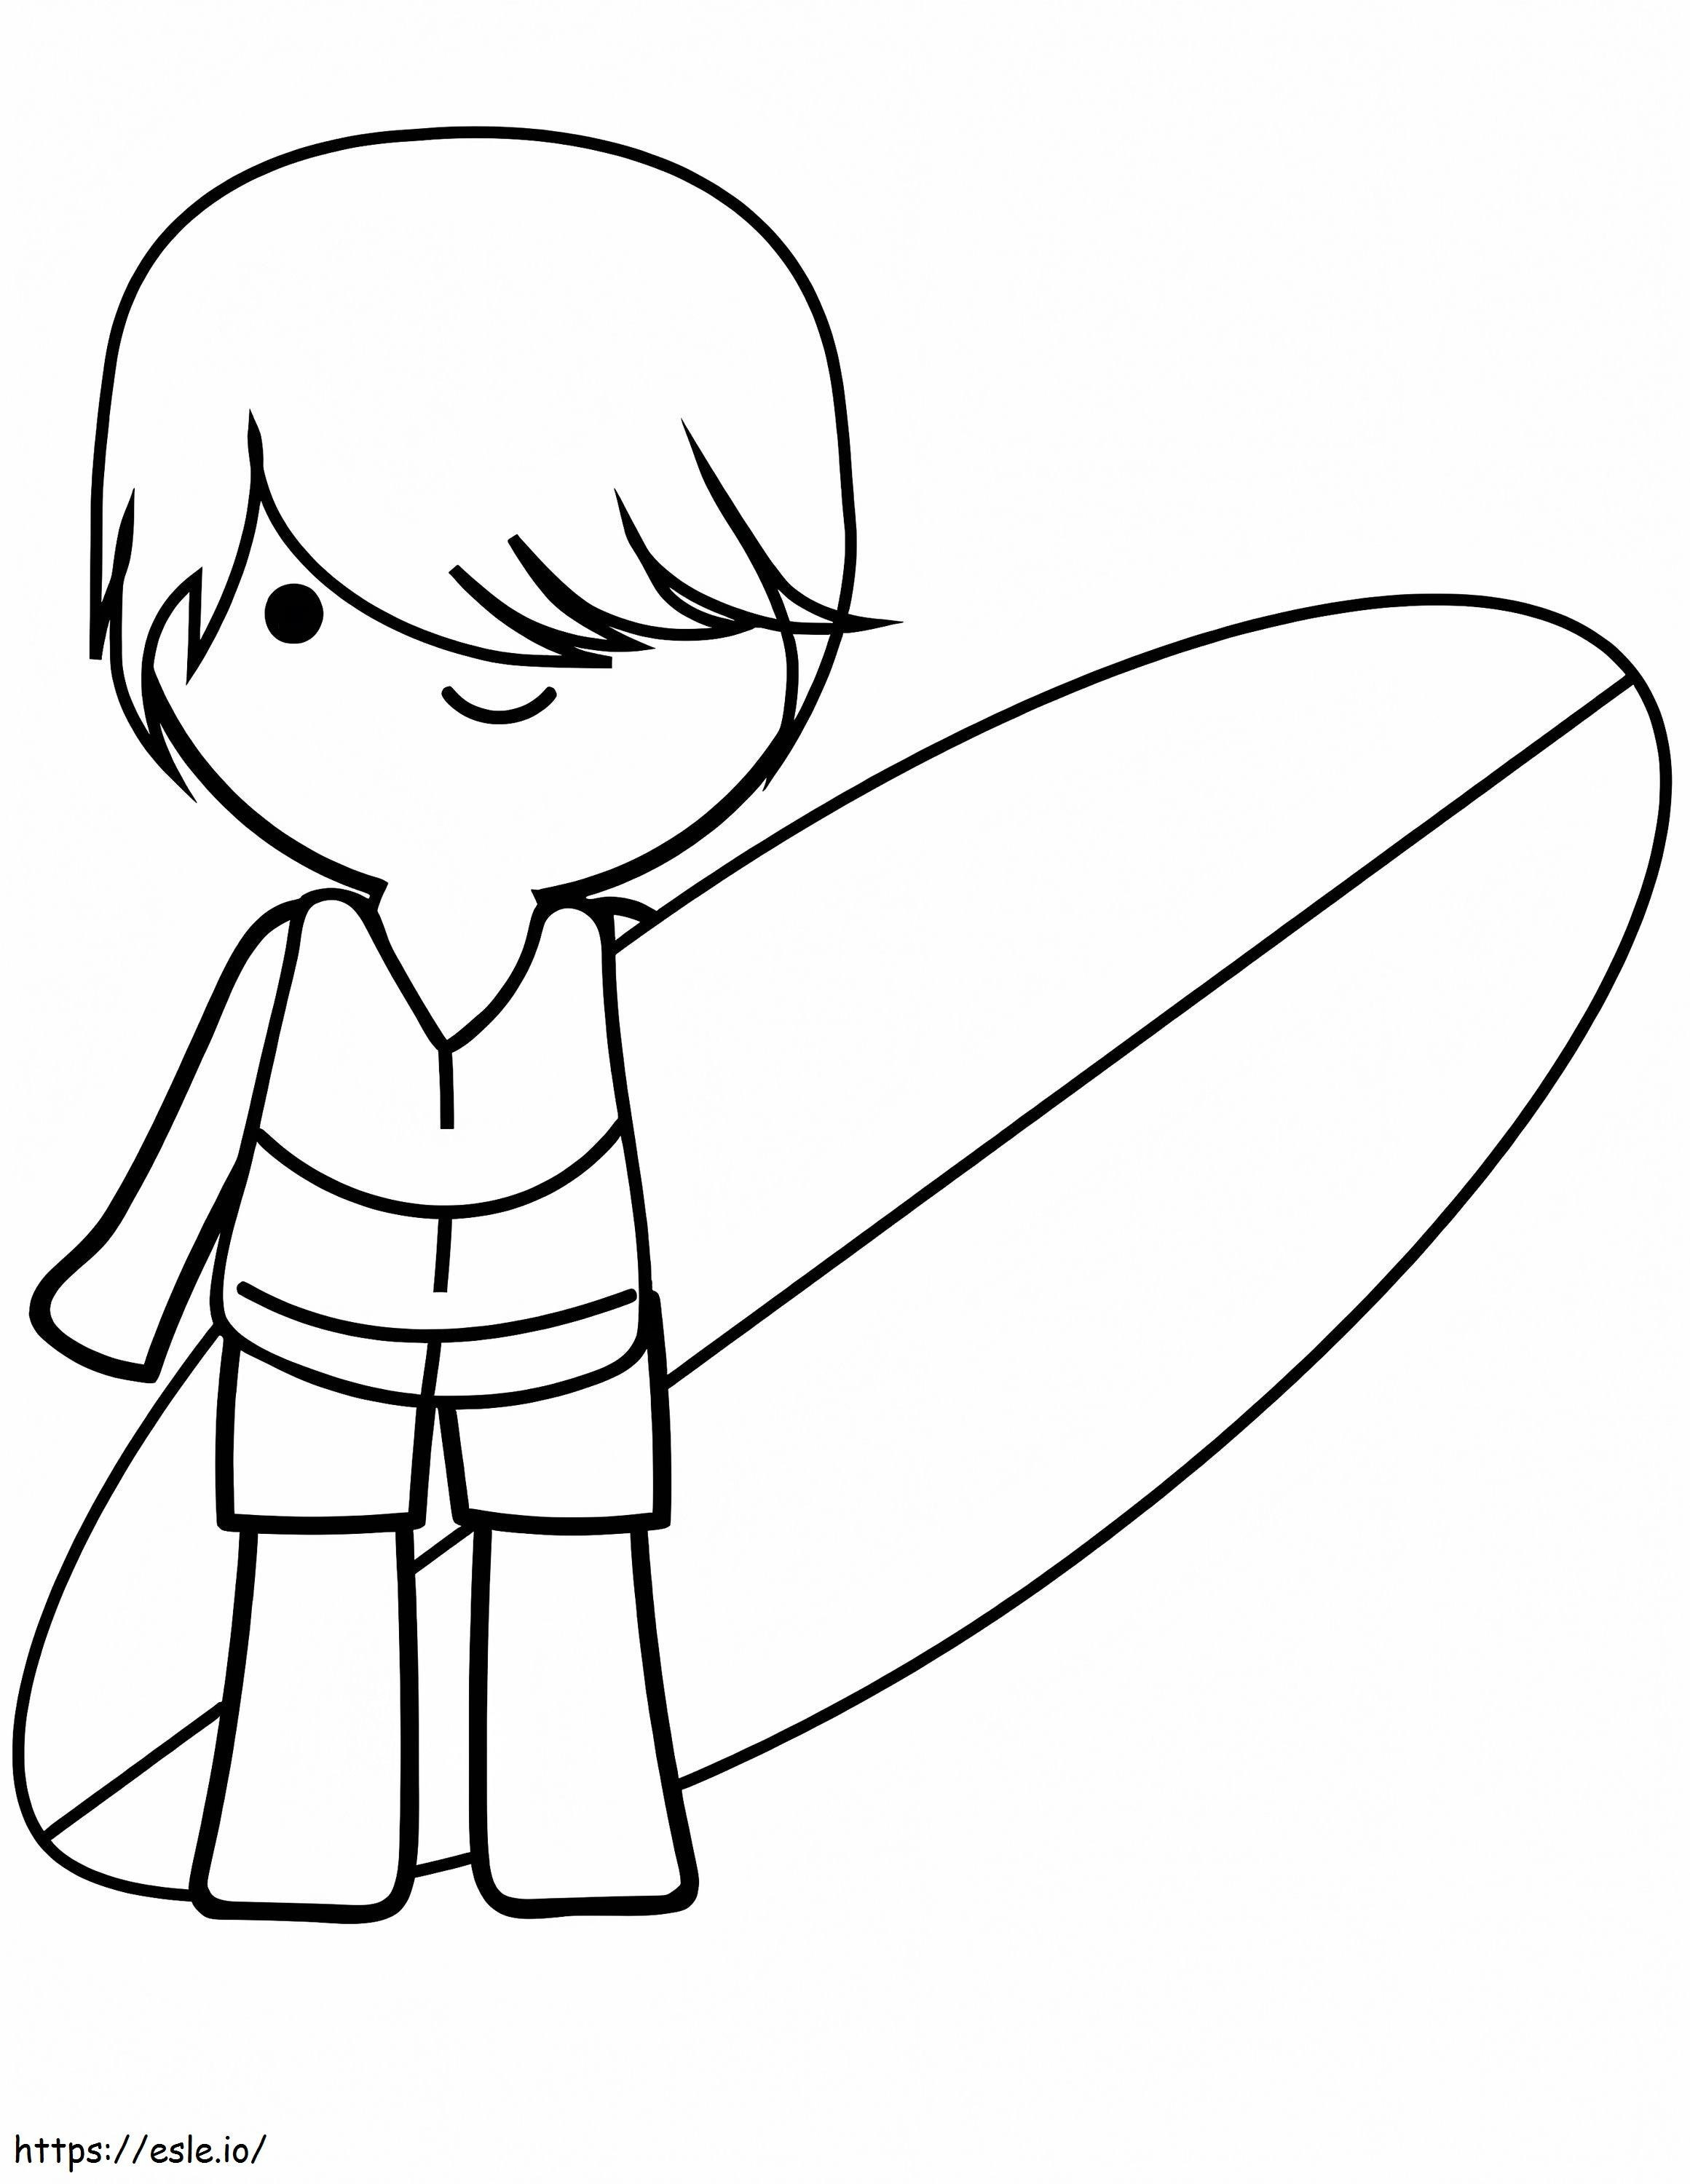 Chłopiec Z Jego Deską Surfingową kolorowanka